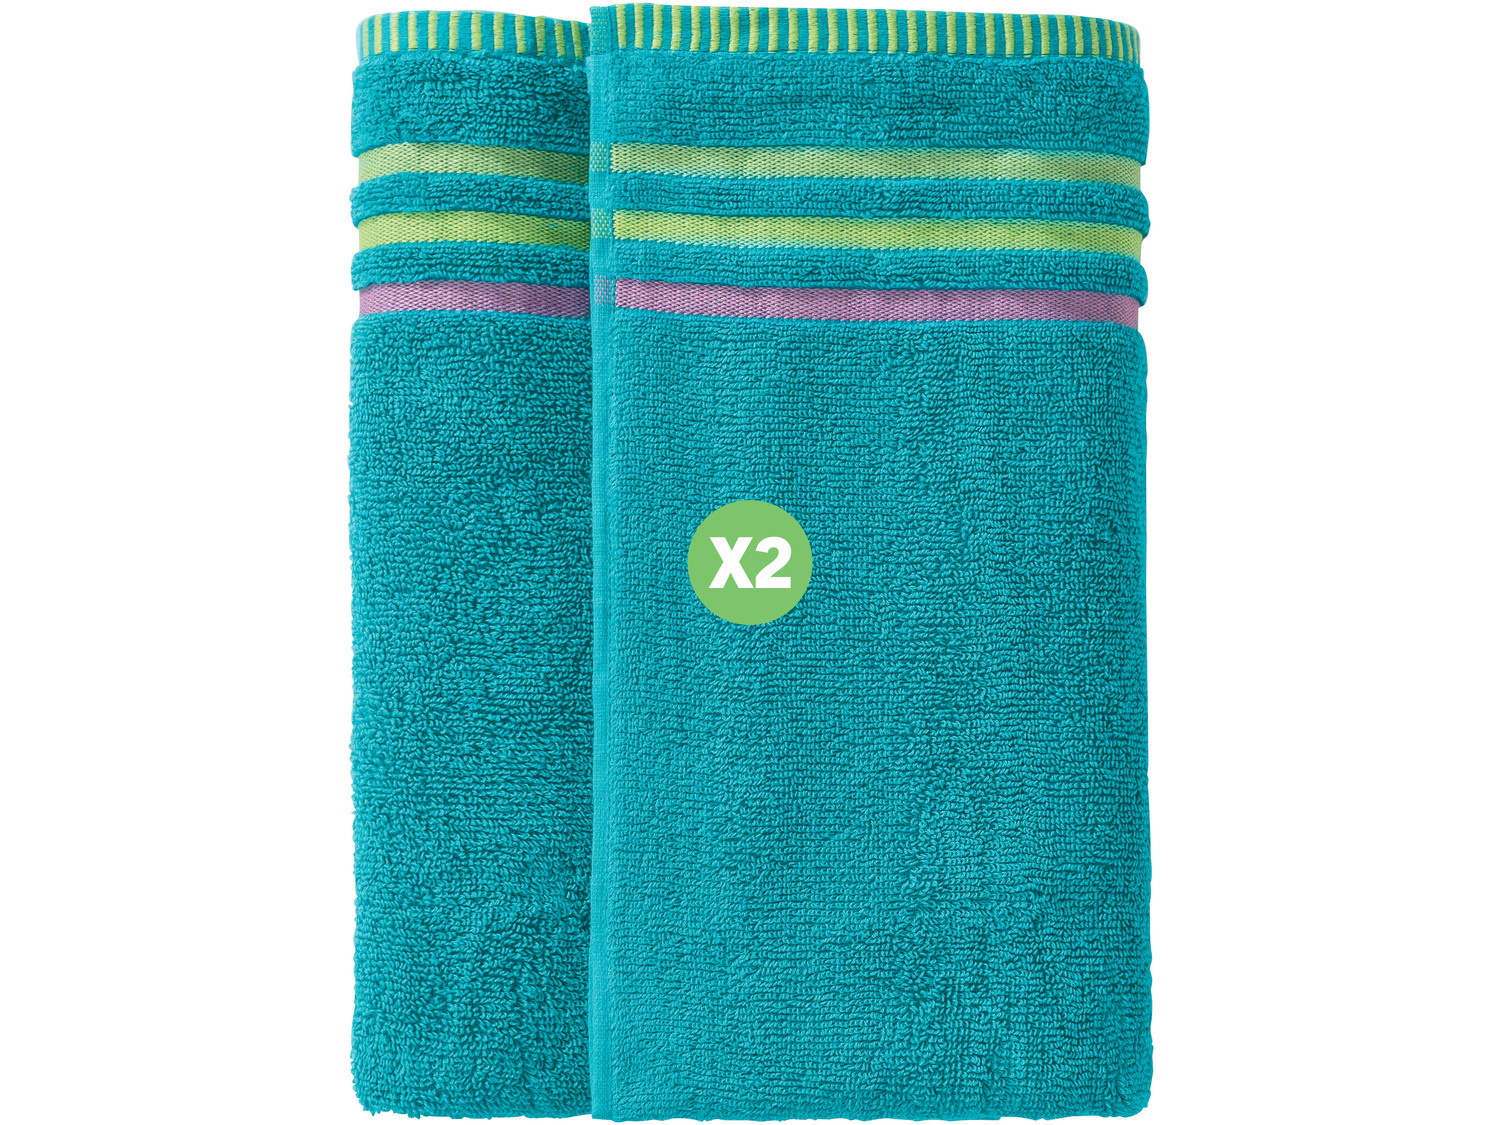 Ręczniki 50 x 100, 2 szt.* Miomare, cena 9,99 PLN 
4 kolory 
- chłonne i wytrzymałe
- ...